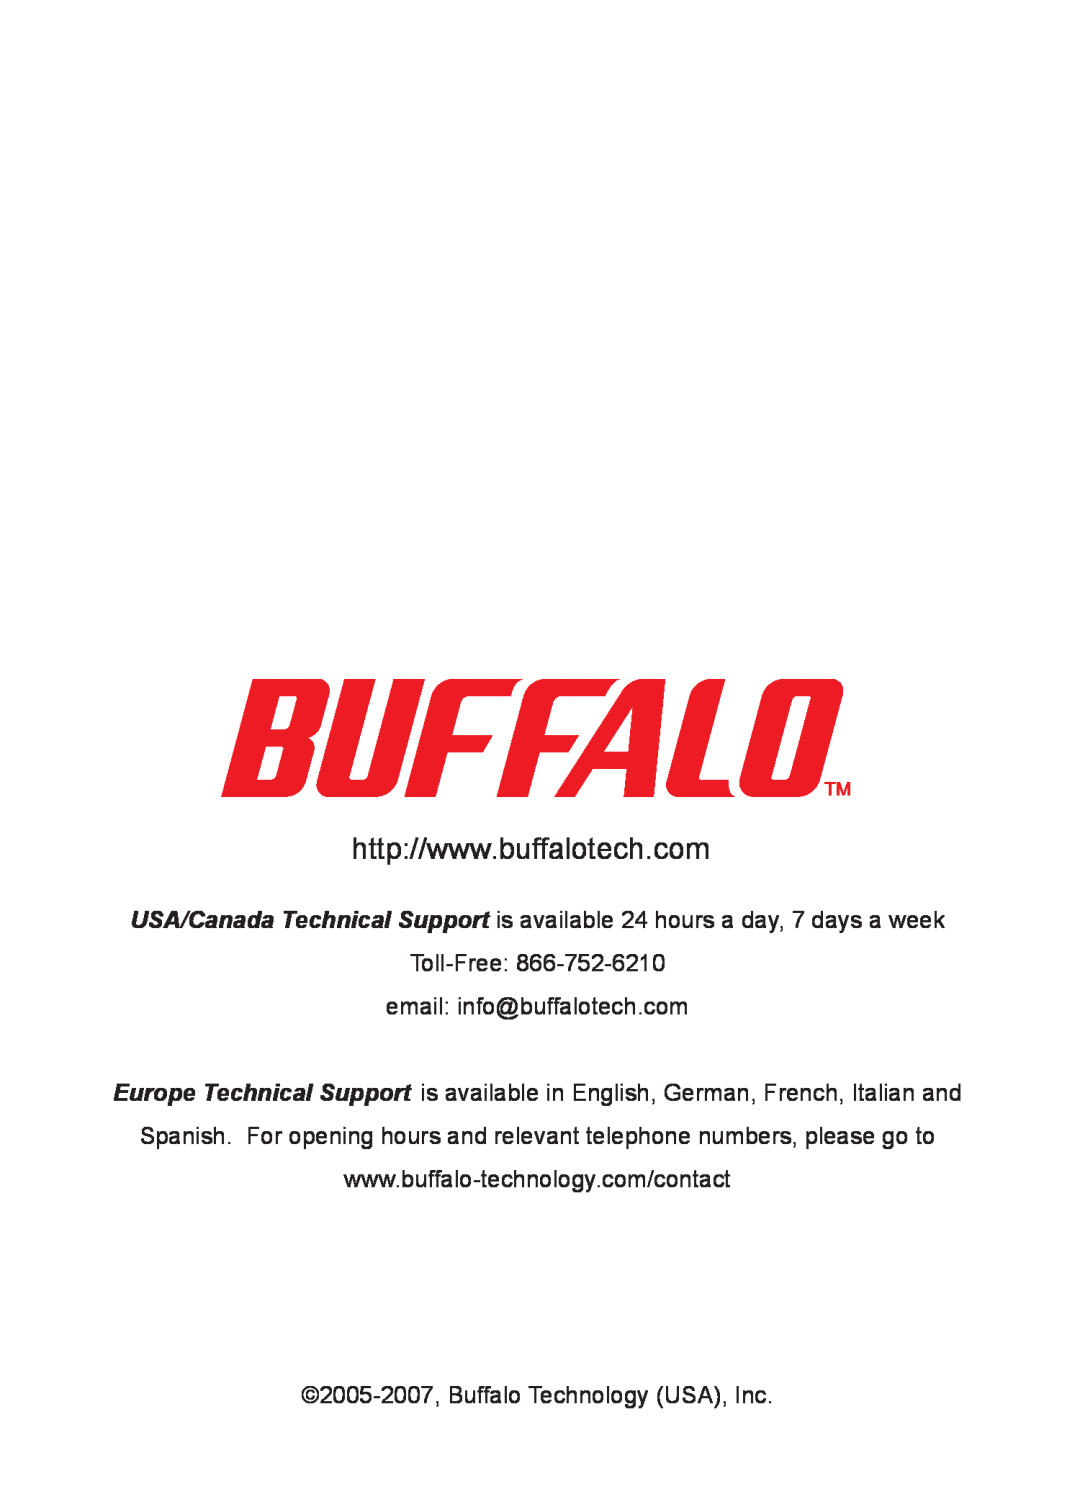 Buffalo Technology LS-LGL manual Toll-Free email info@buffalotech.com, 2005-2007, Buffalo Technology USA, Inc 